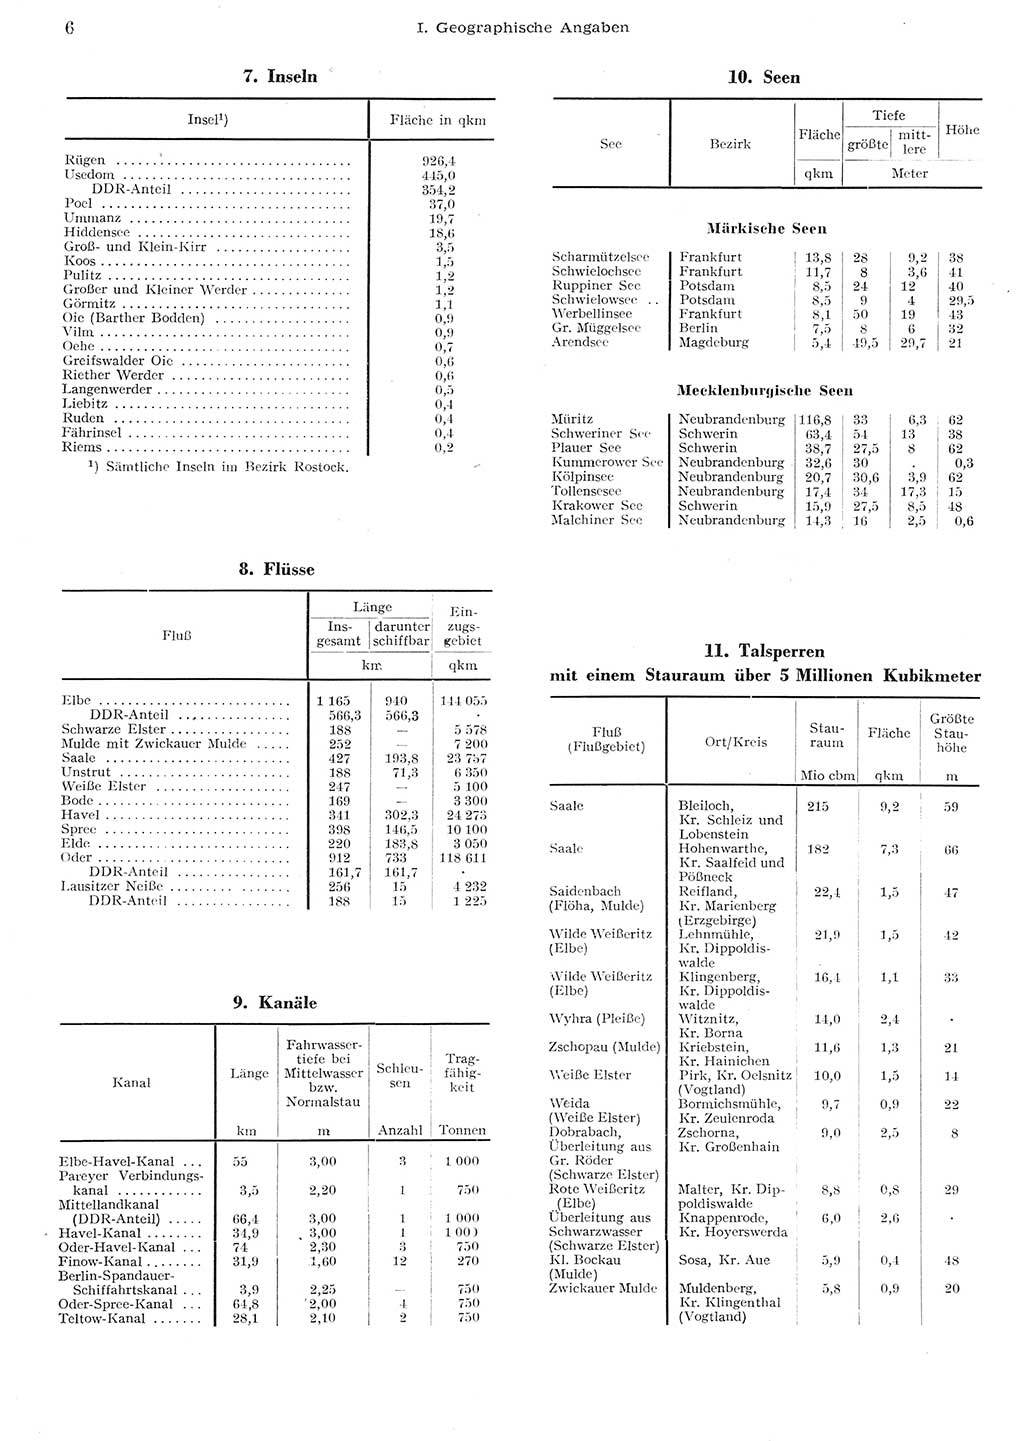 Statistisches Jahrbuch der Deutschen Demokratischen Republik (DDR) 1955, Seite 6 (Stat. Jb. DDR 1955, S. 6)